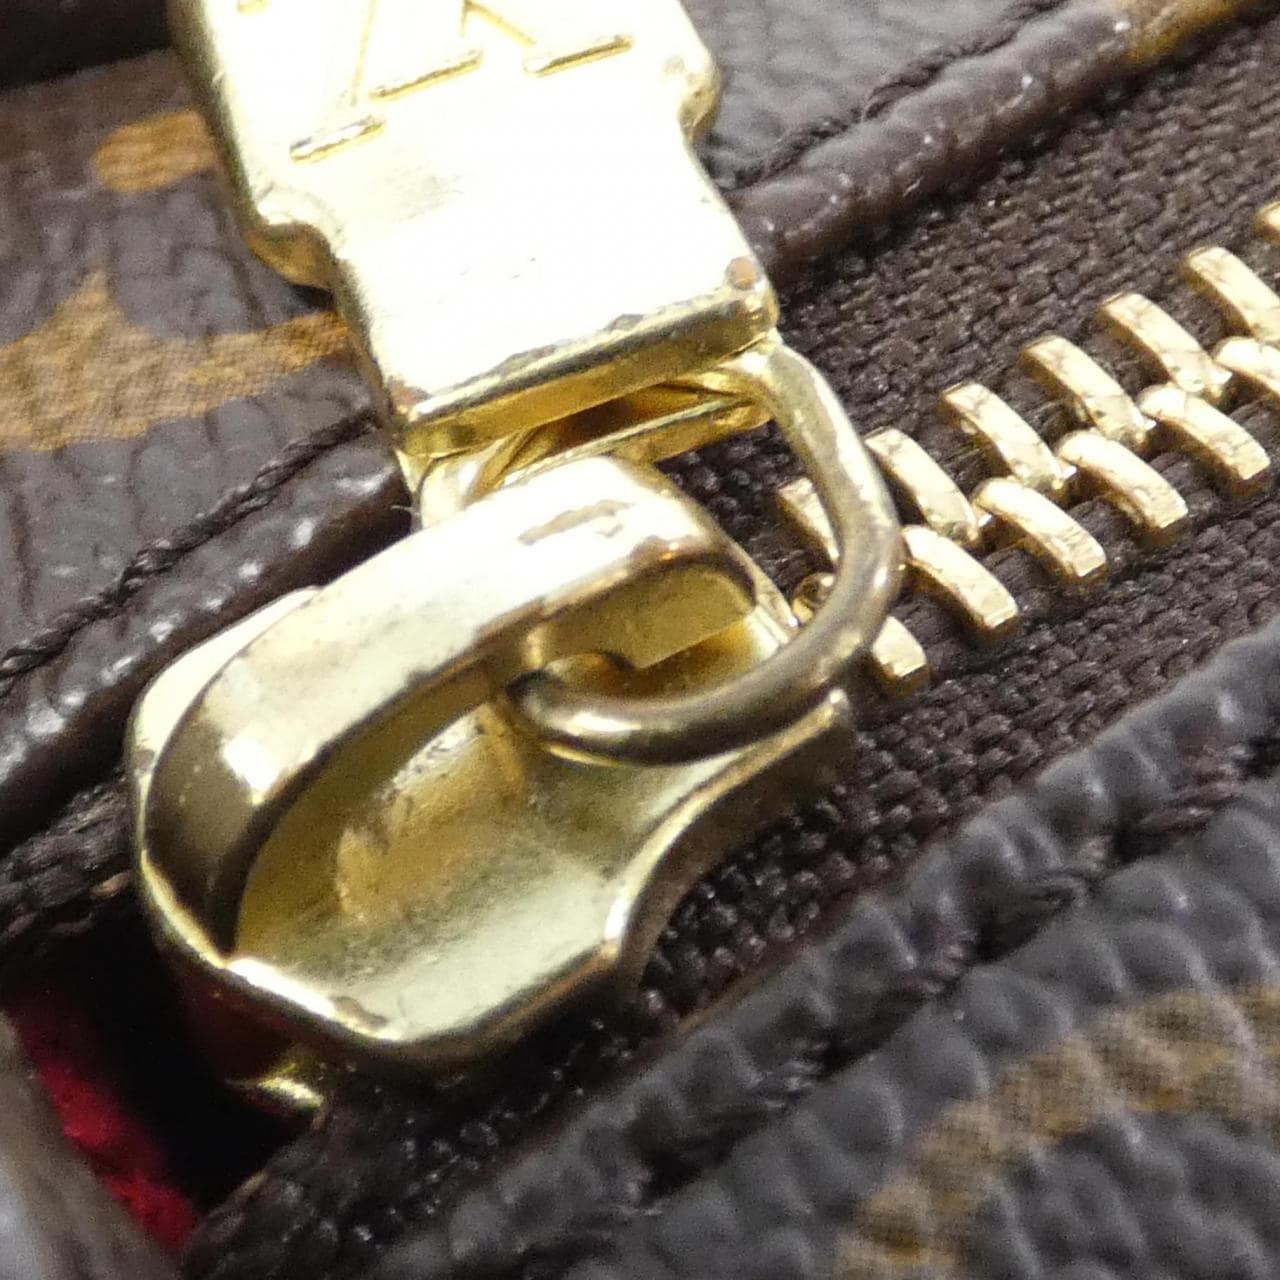 Authentic Louis Vuitton Viva Cite MM Monogram M51164 Handbag